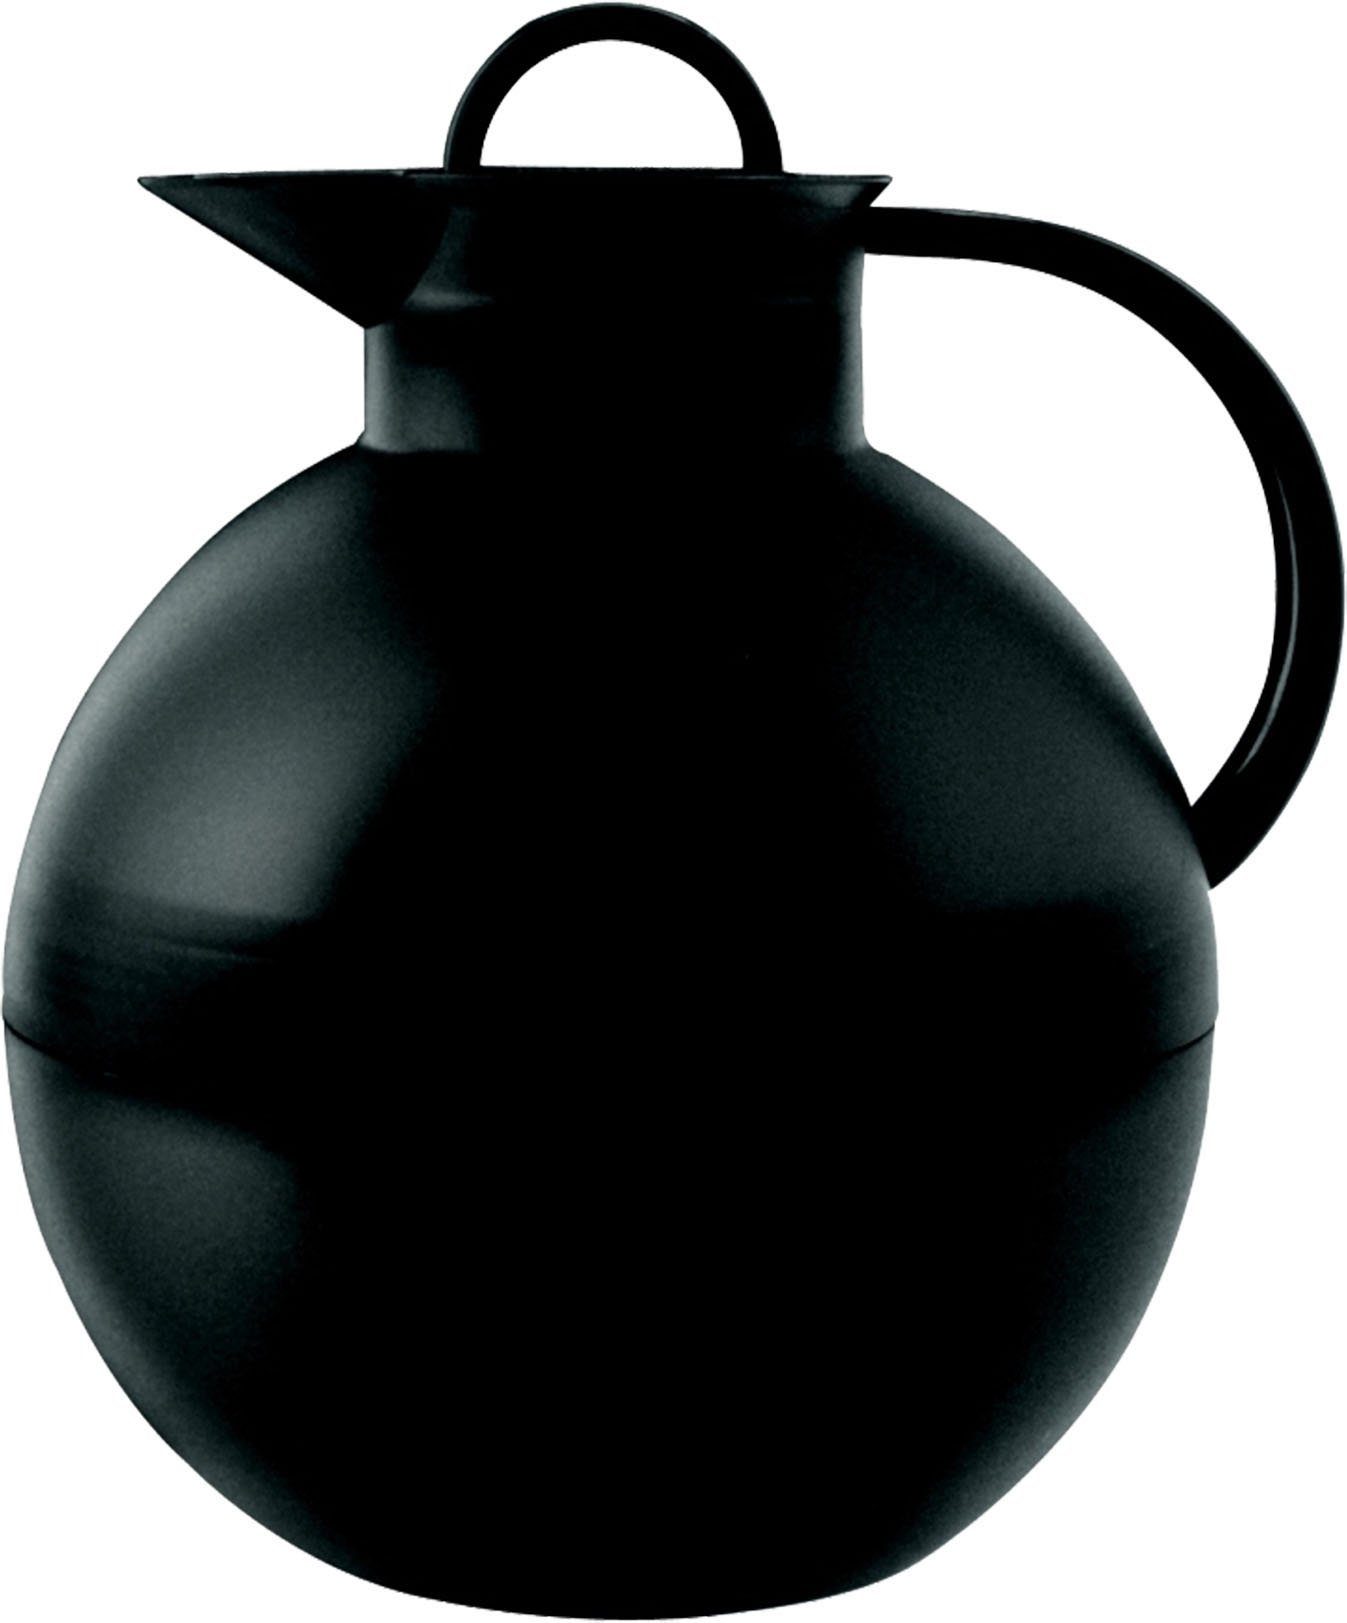 Alfi Isolierkanne, 0,94 l, Kunststoff schwarz | Isolierkannen